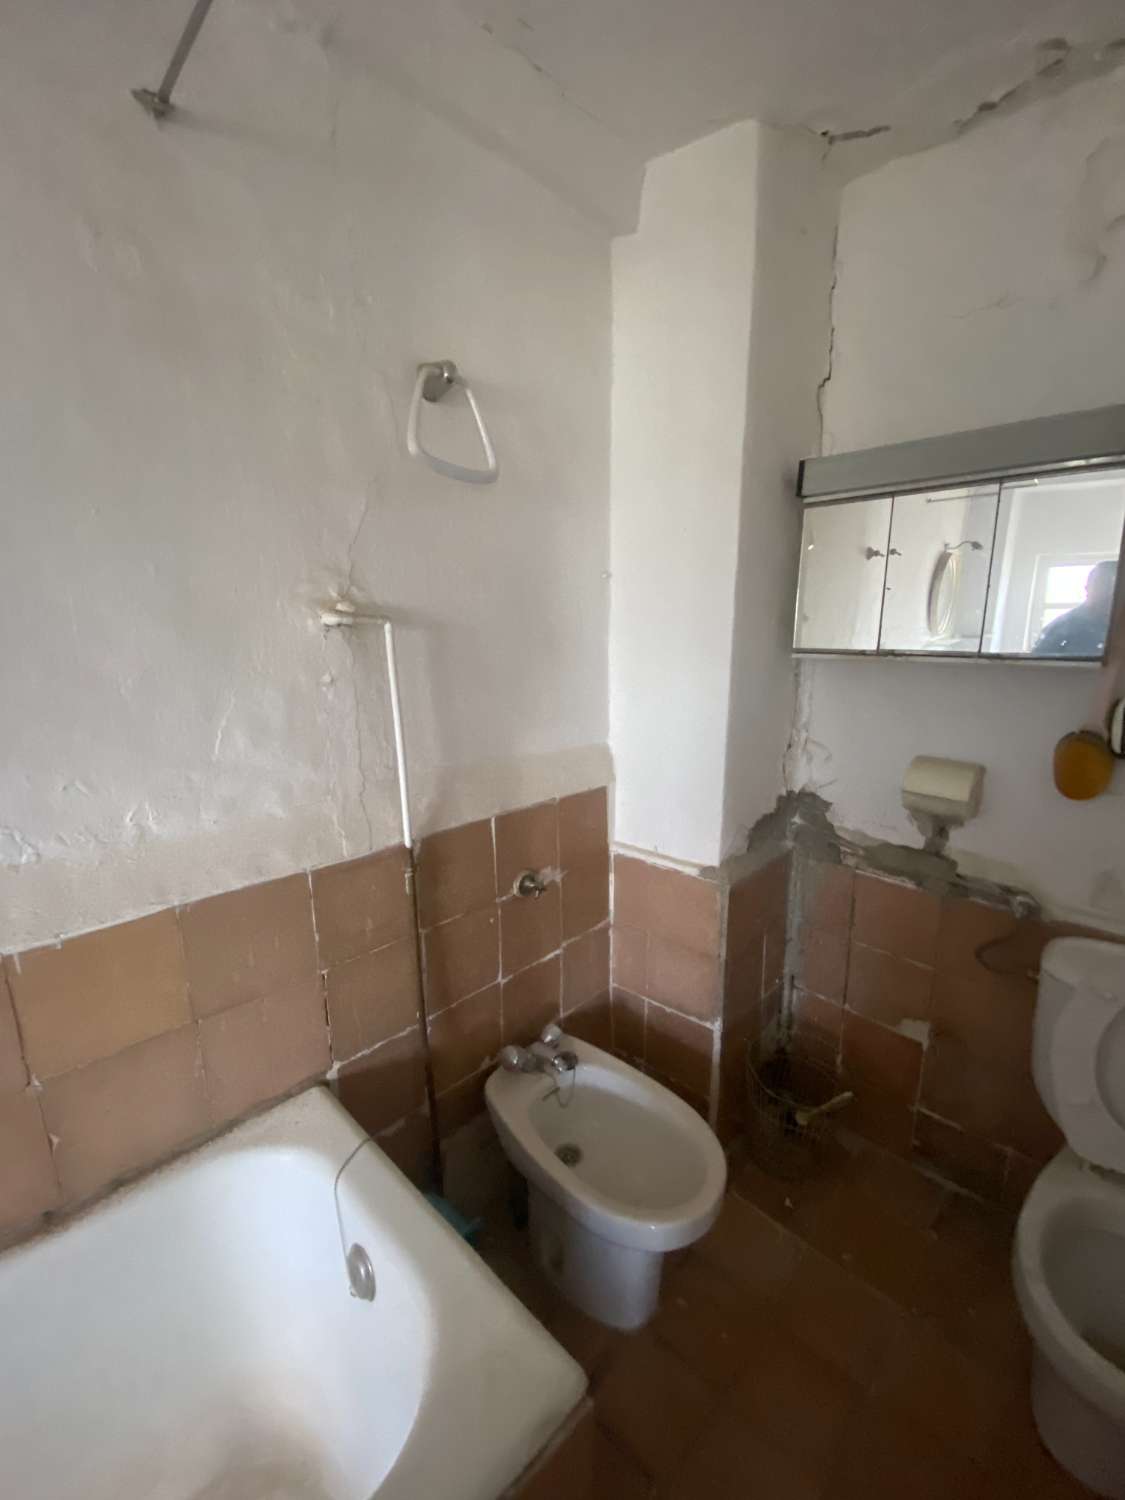 Maison de 9 chambres et 2 salles de bain pour la réforme à Velez-Rubio